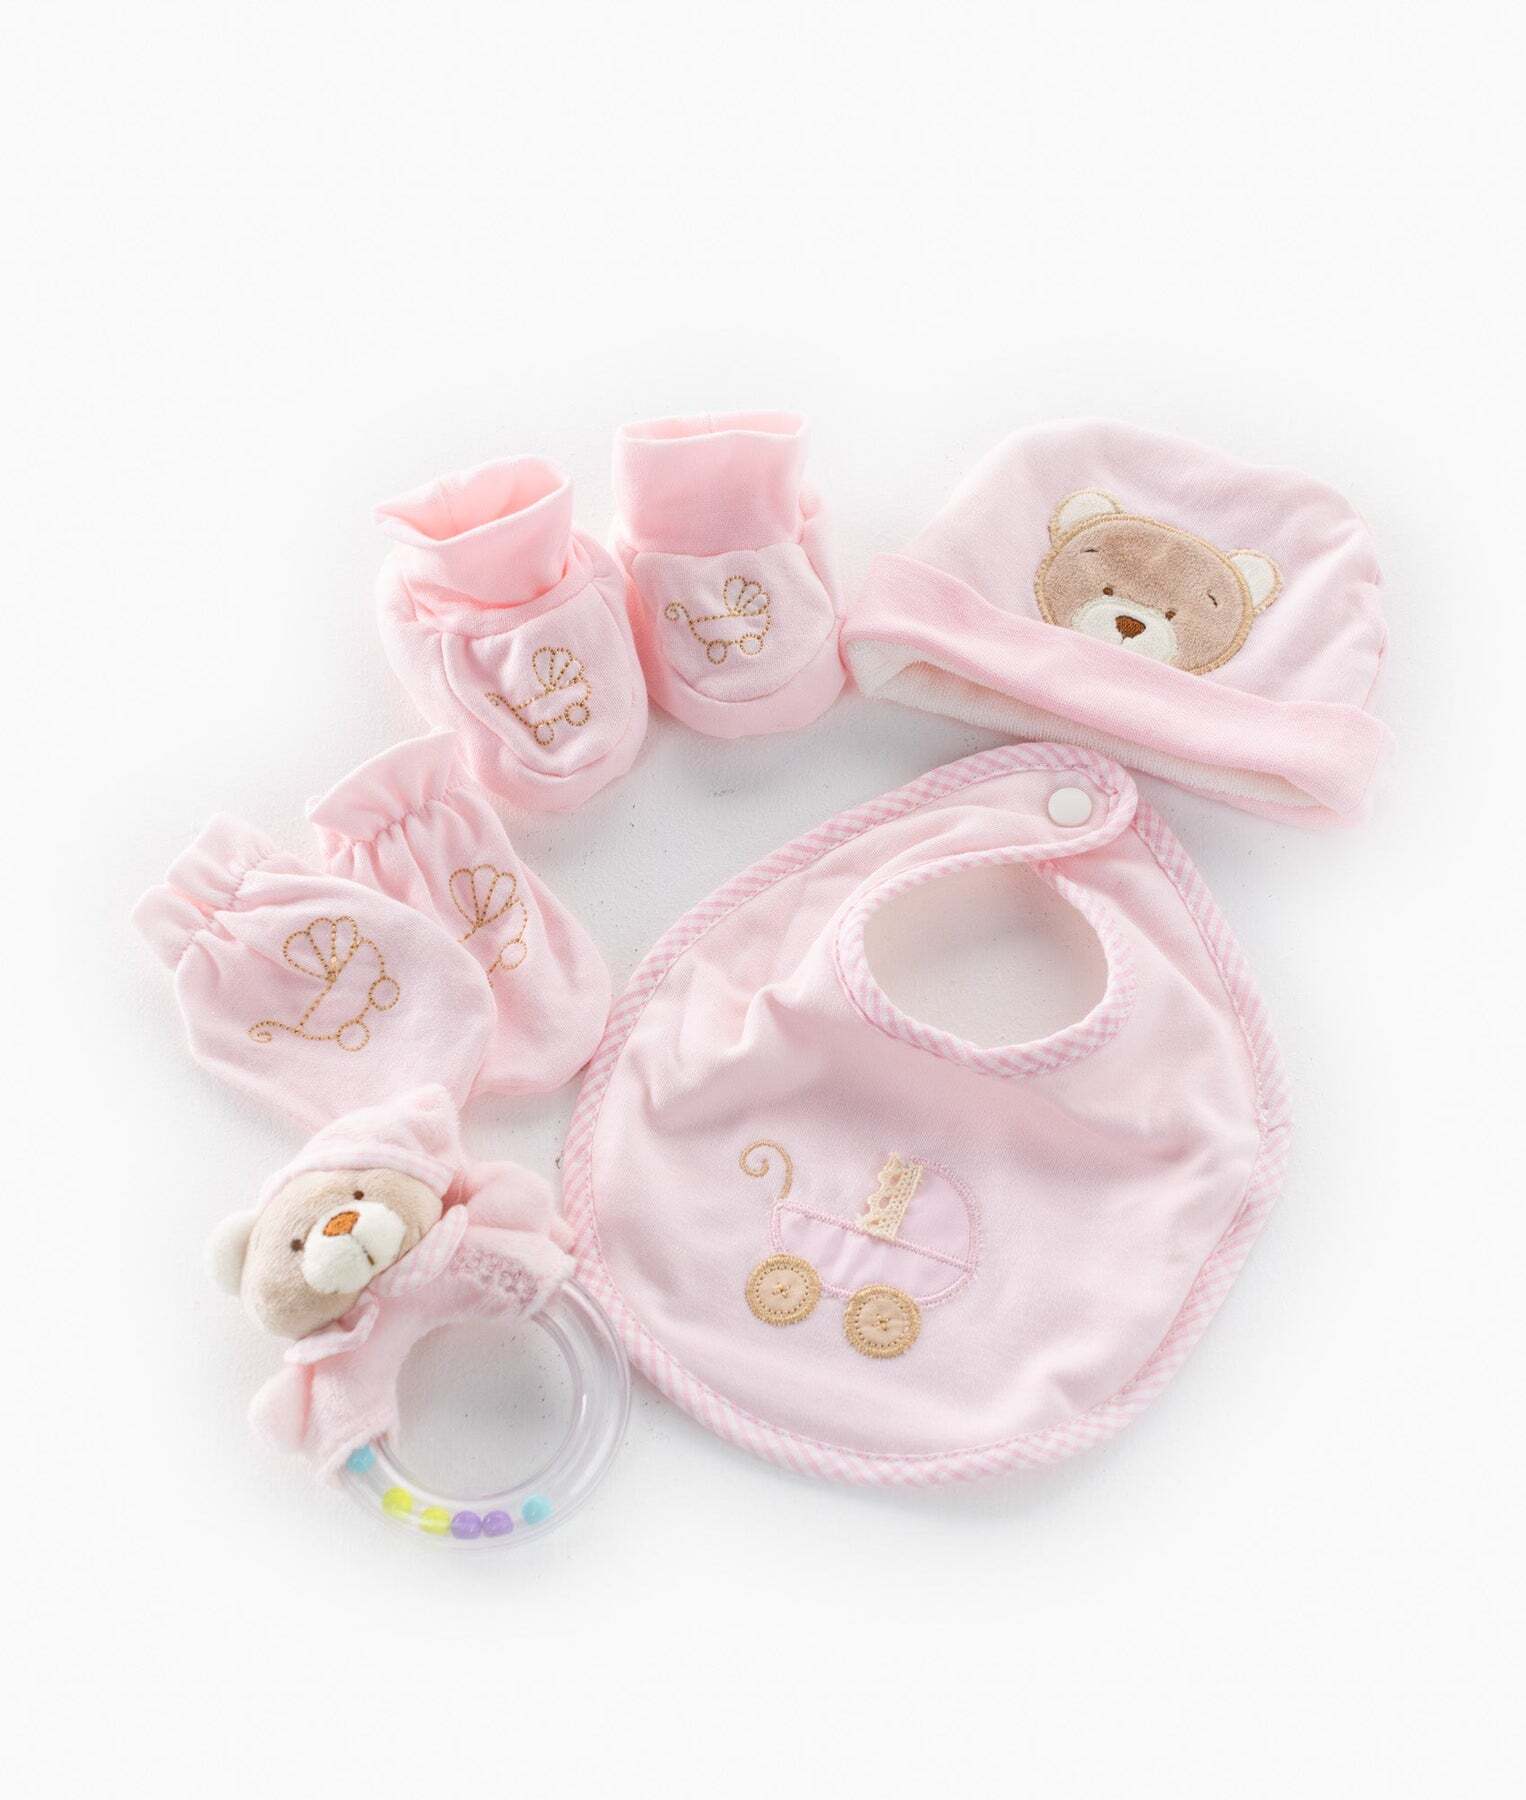 5pc-baby-set-pink-682_1800x1800